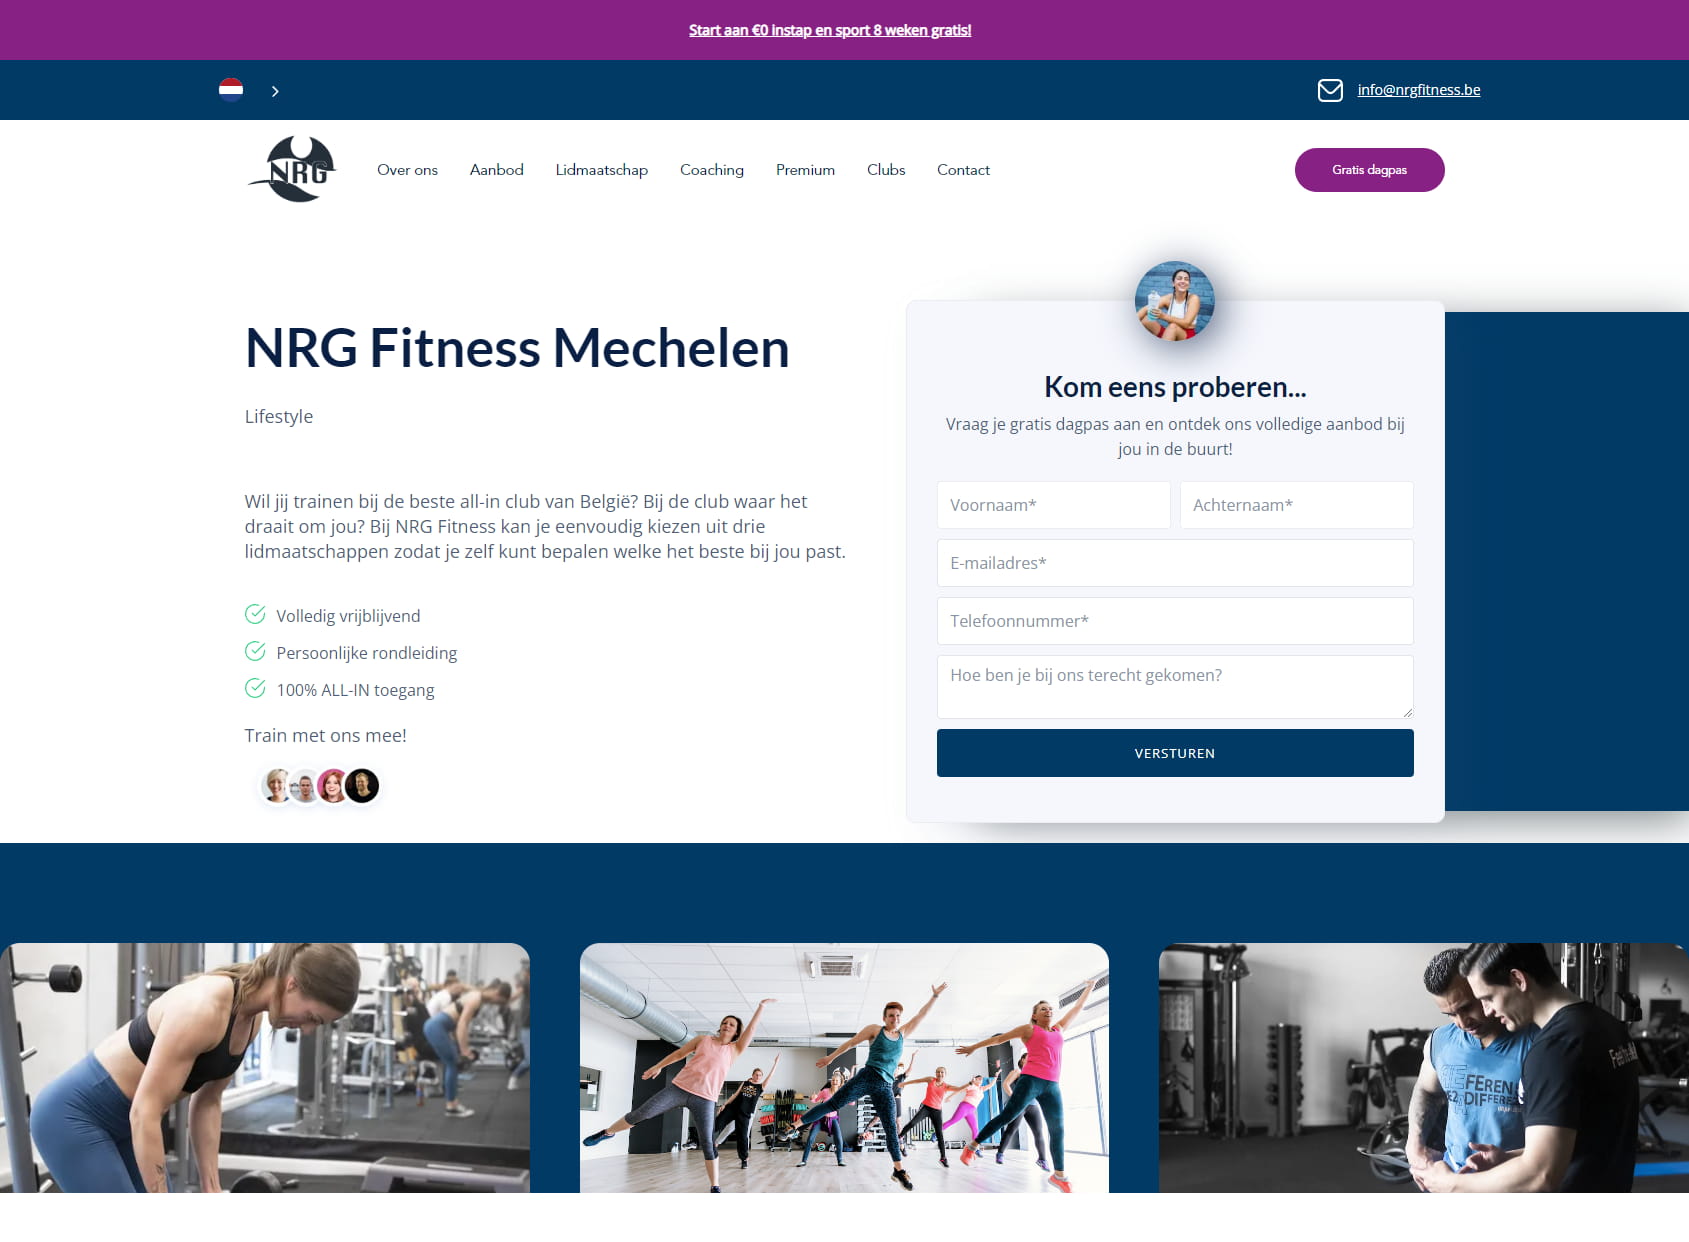 NRG Fitness Mechelen